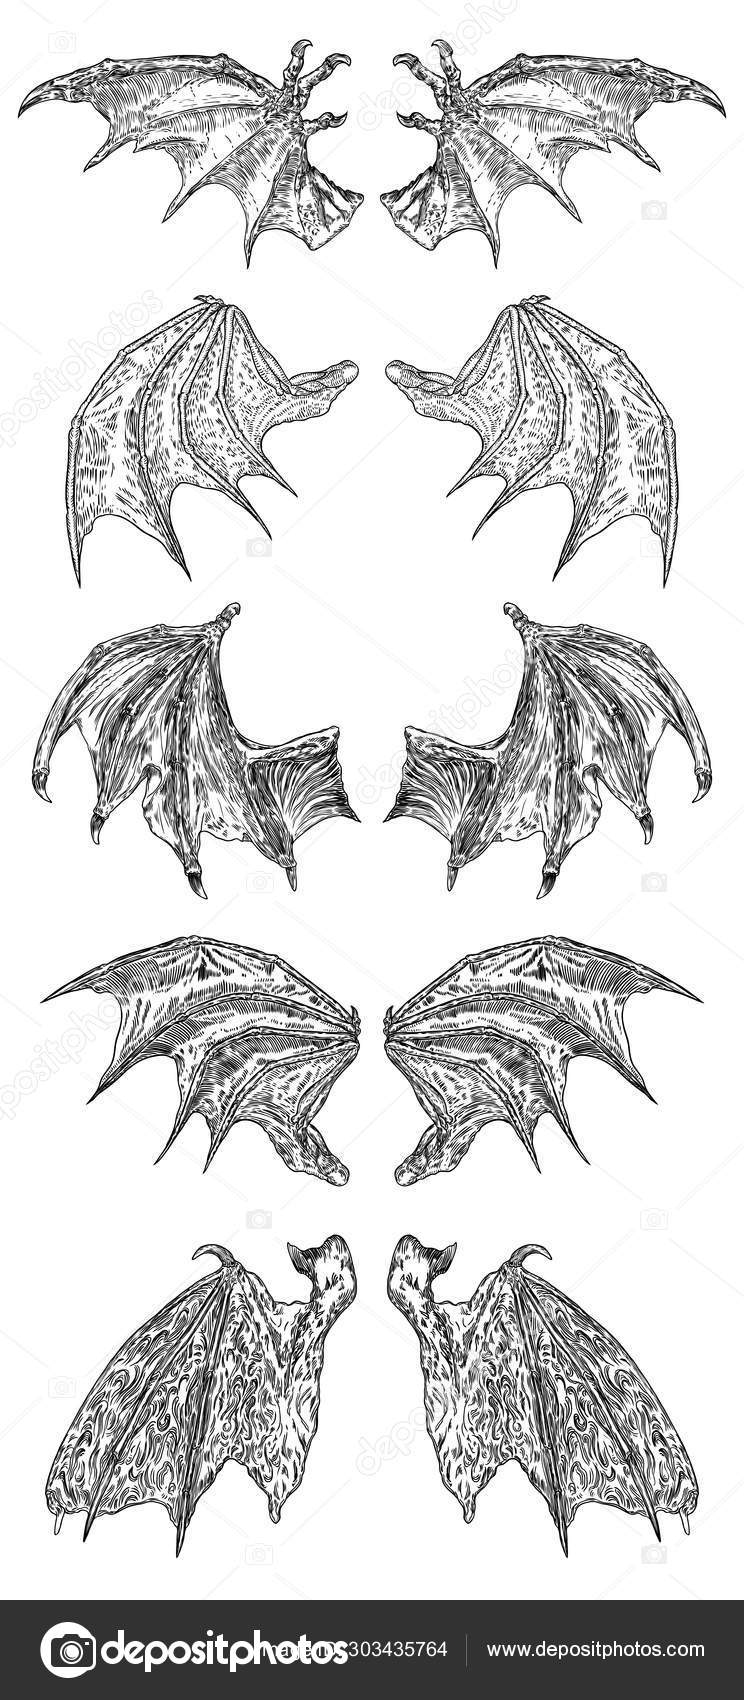 120 Gargoyles Tattoo Drawing Illustrations RoyaltyFree Vector Graphics   Clip Art  iStock